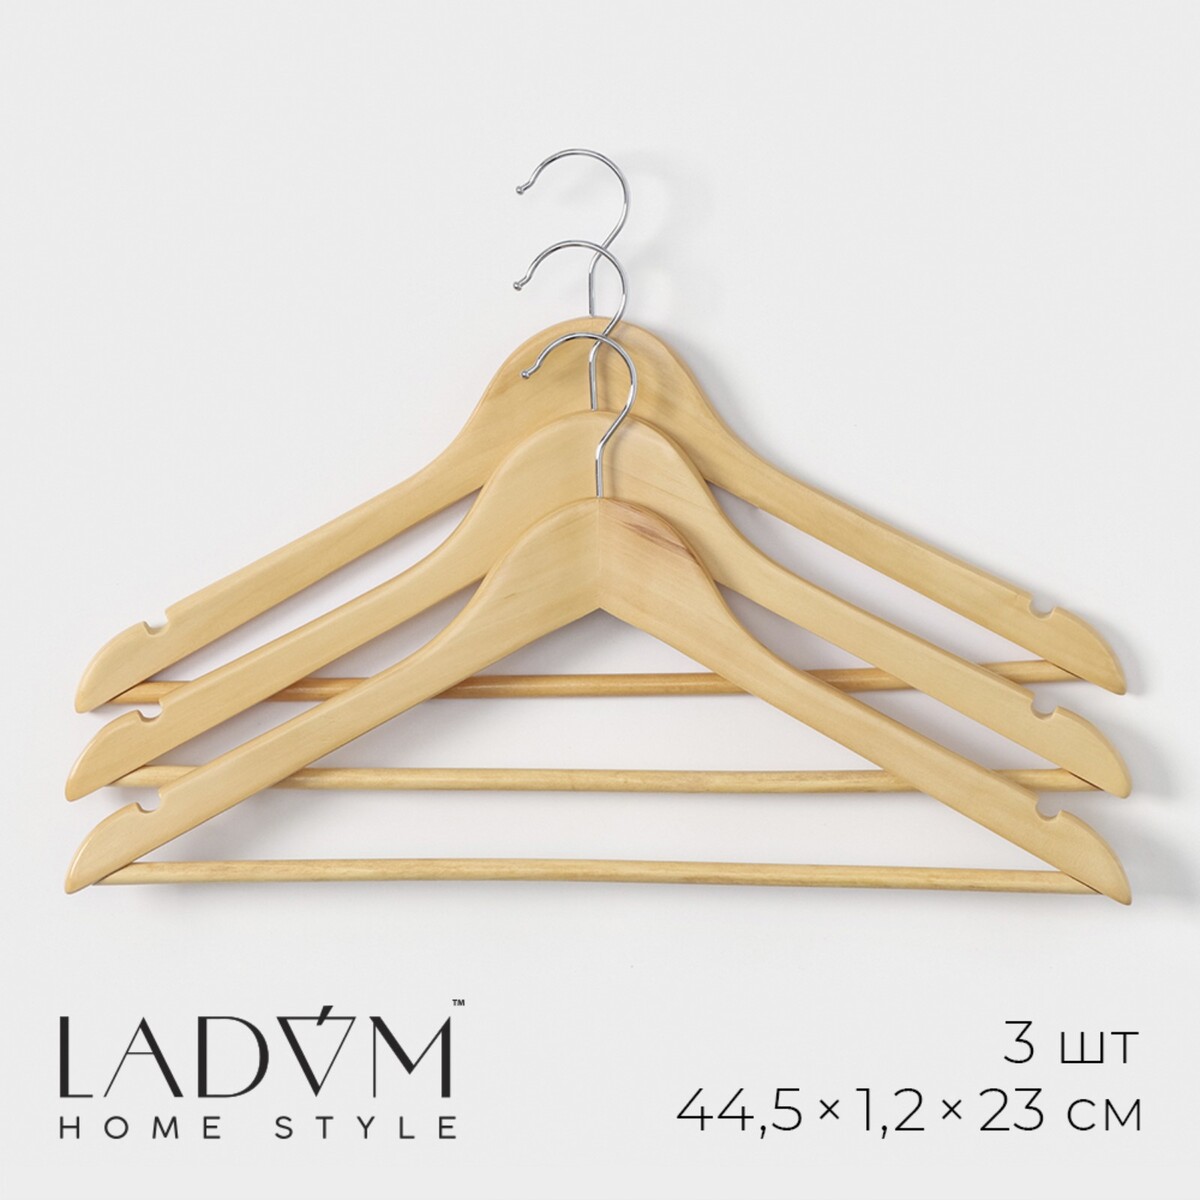 Плечики - вешалки деревянные для одежды с перекладиной ladо́m bois, 44,5×1,2×23 см, 3 шт, сорт а, цвет светлое дерево